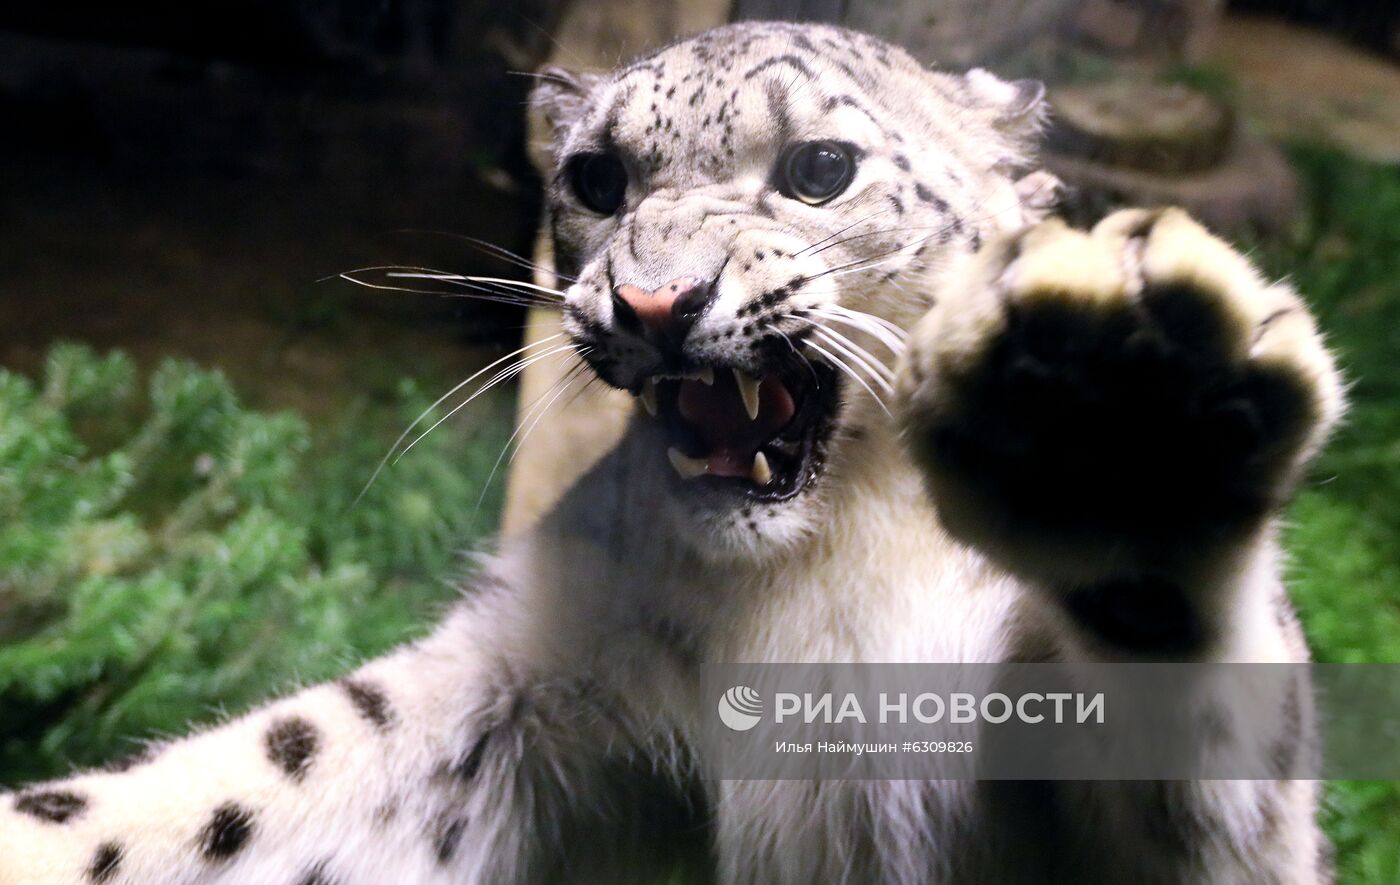 20-летие парка флоры и фауны "Роев ручей" в Красноярске